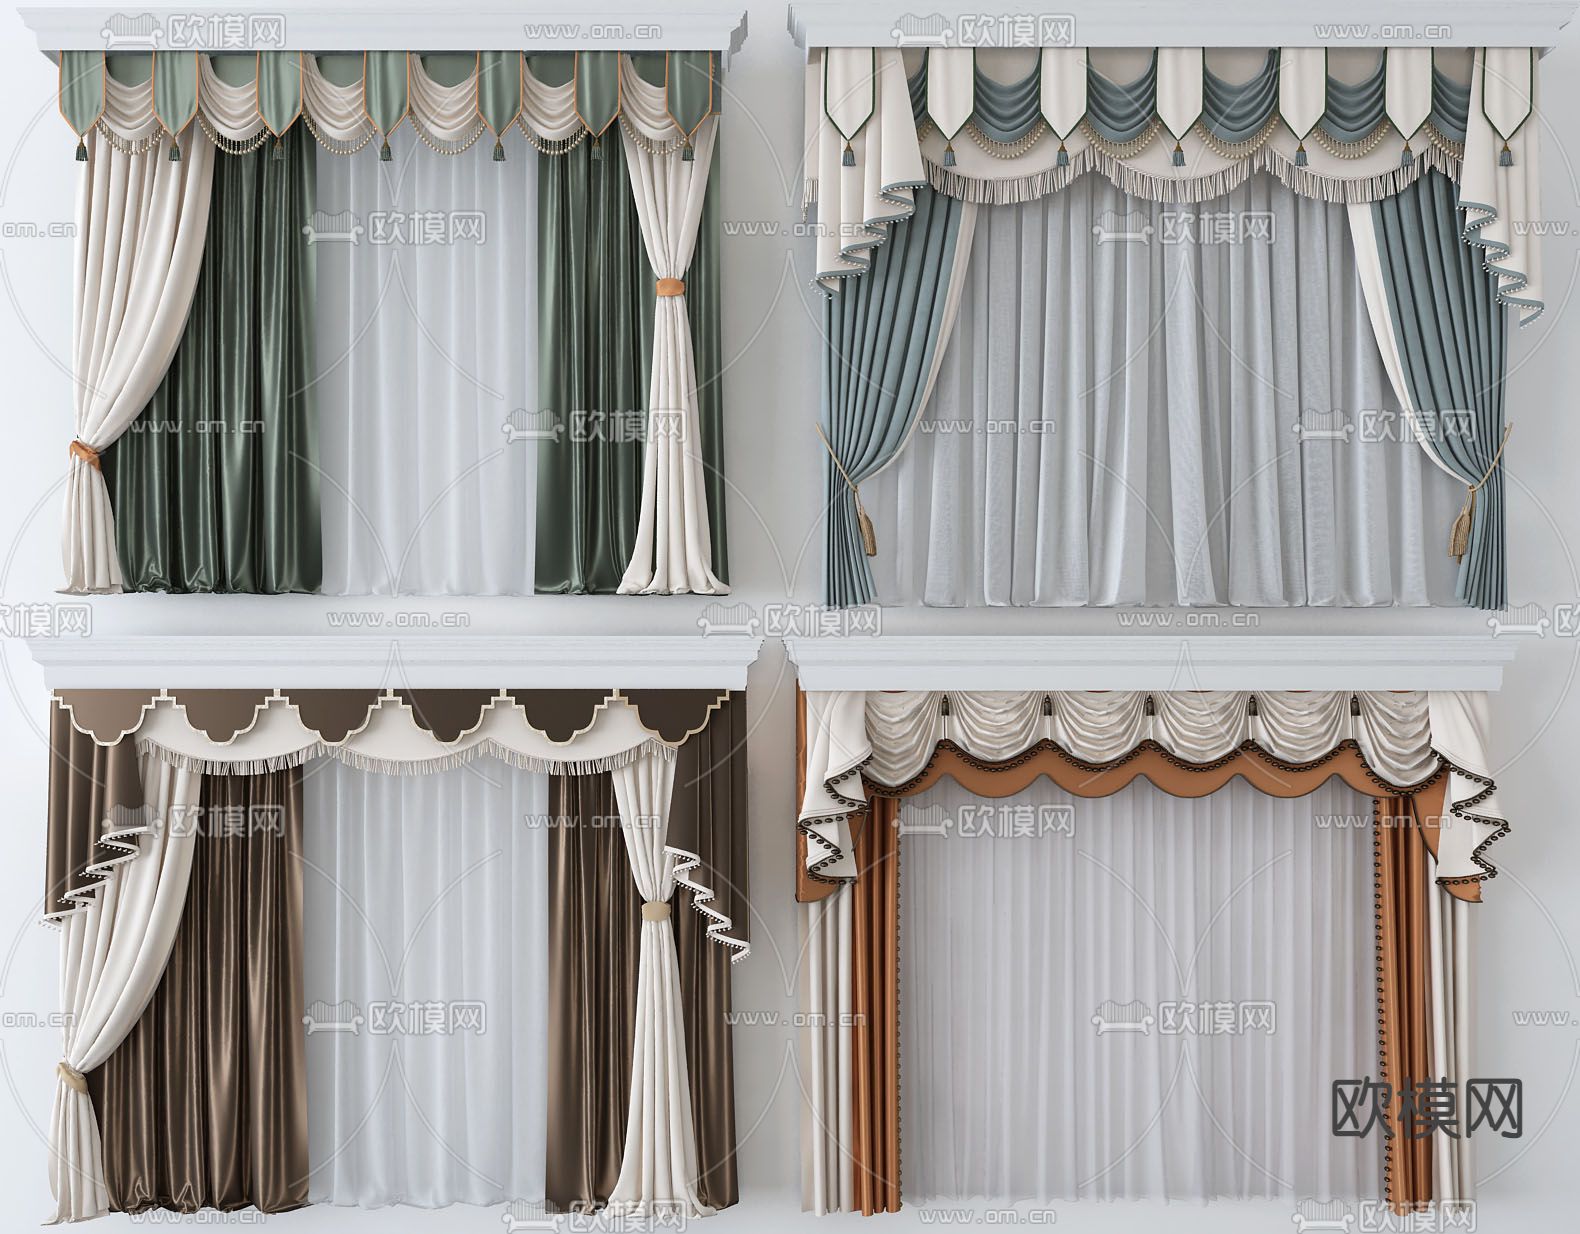 伊莎莱-客厅阳台窗帘效果图-客厅窗帘图片